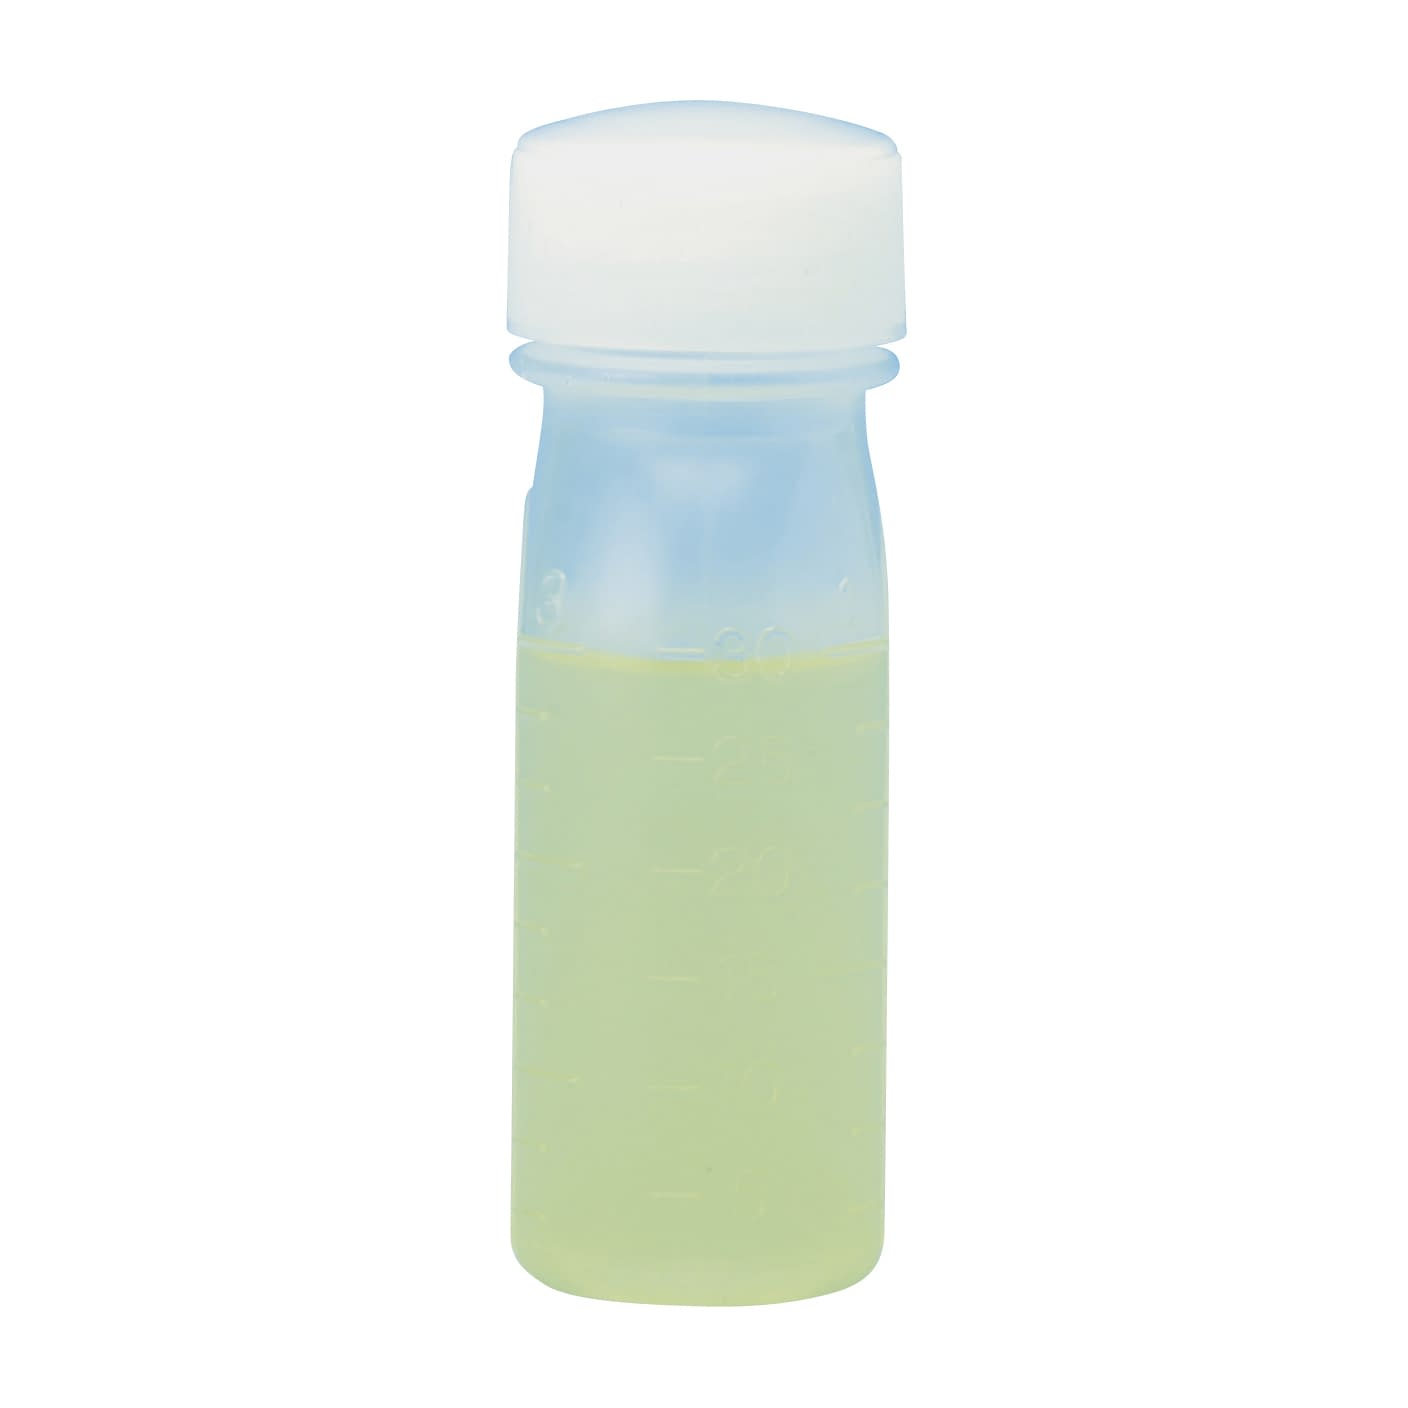 サンケミ 1型投薬瓶 10002 60CC 200ホン 投薬瓶 25-2826-0160cc緑【サンケミカル】(10002)(25-2826-01-05)